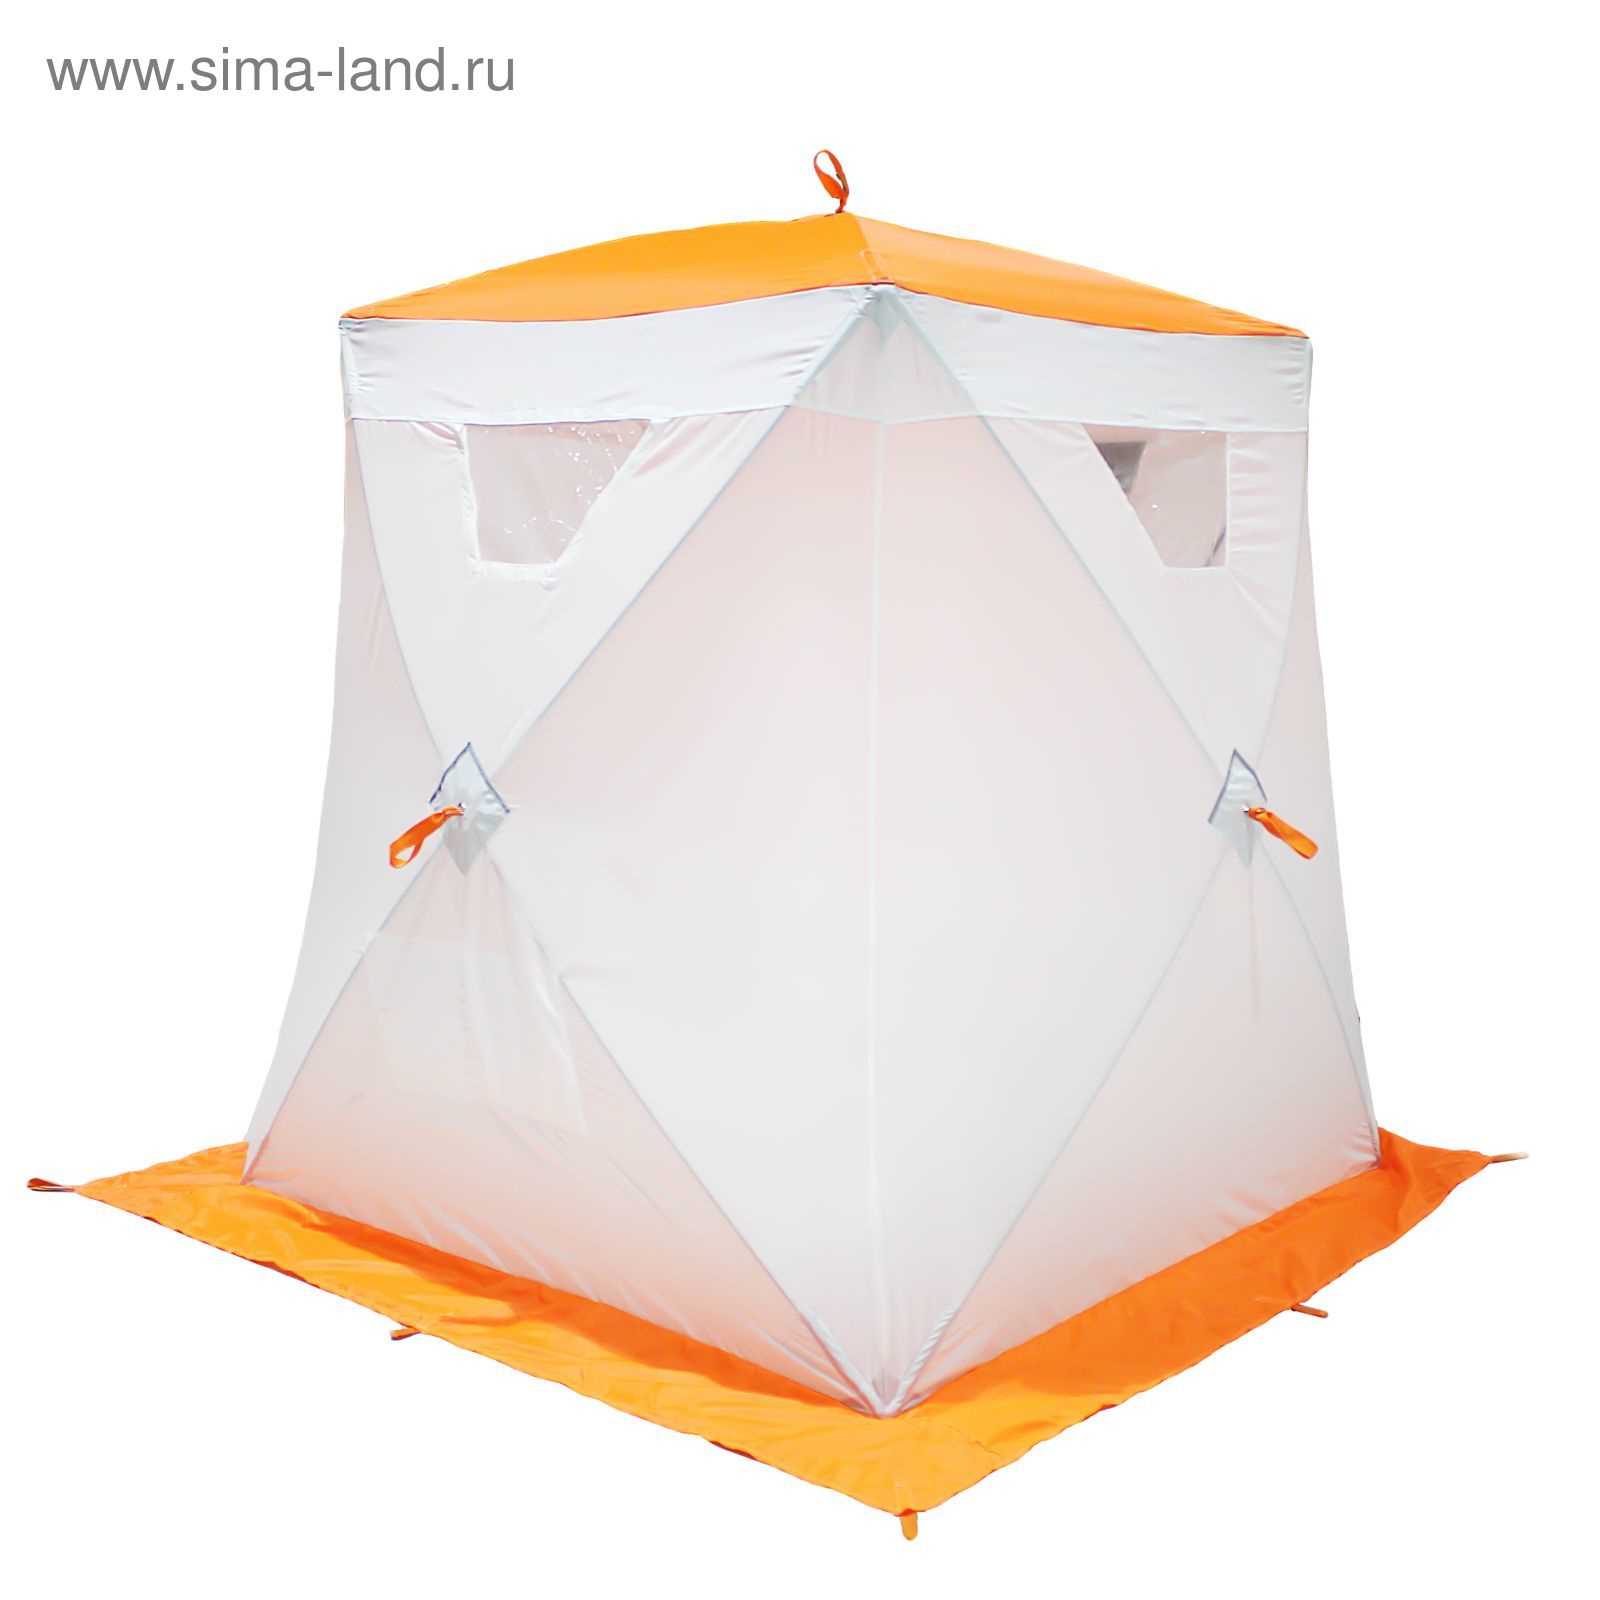 Палатка "Призма Люкс" 150, 1-слойная, цвет бело-оранжевый